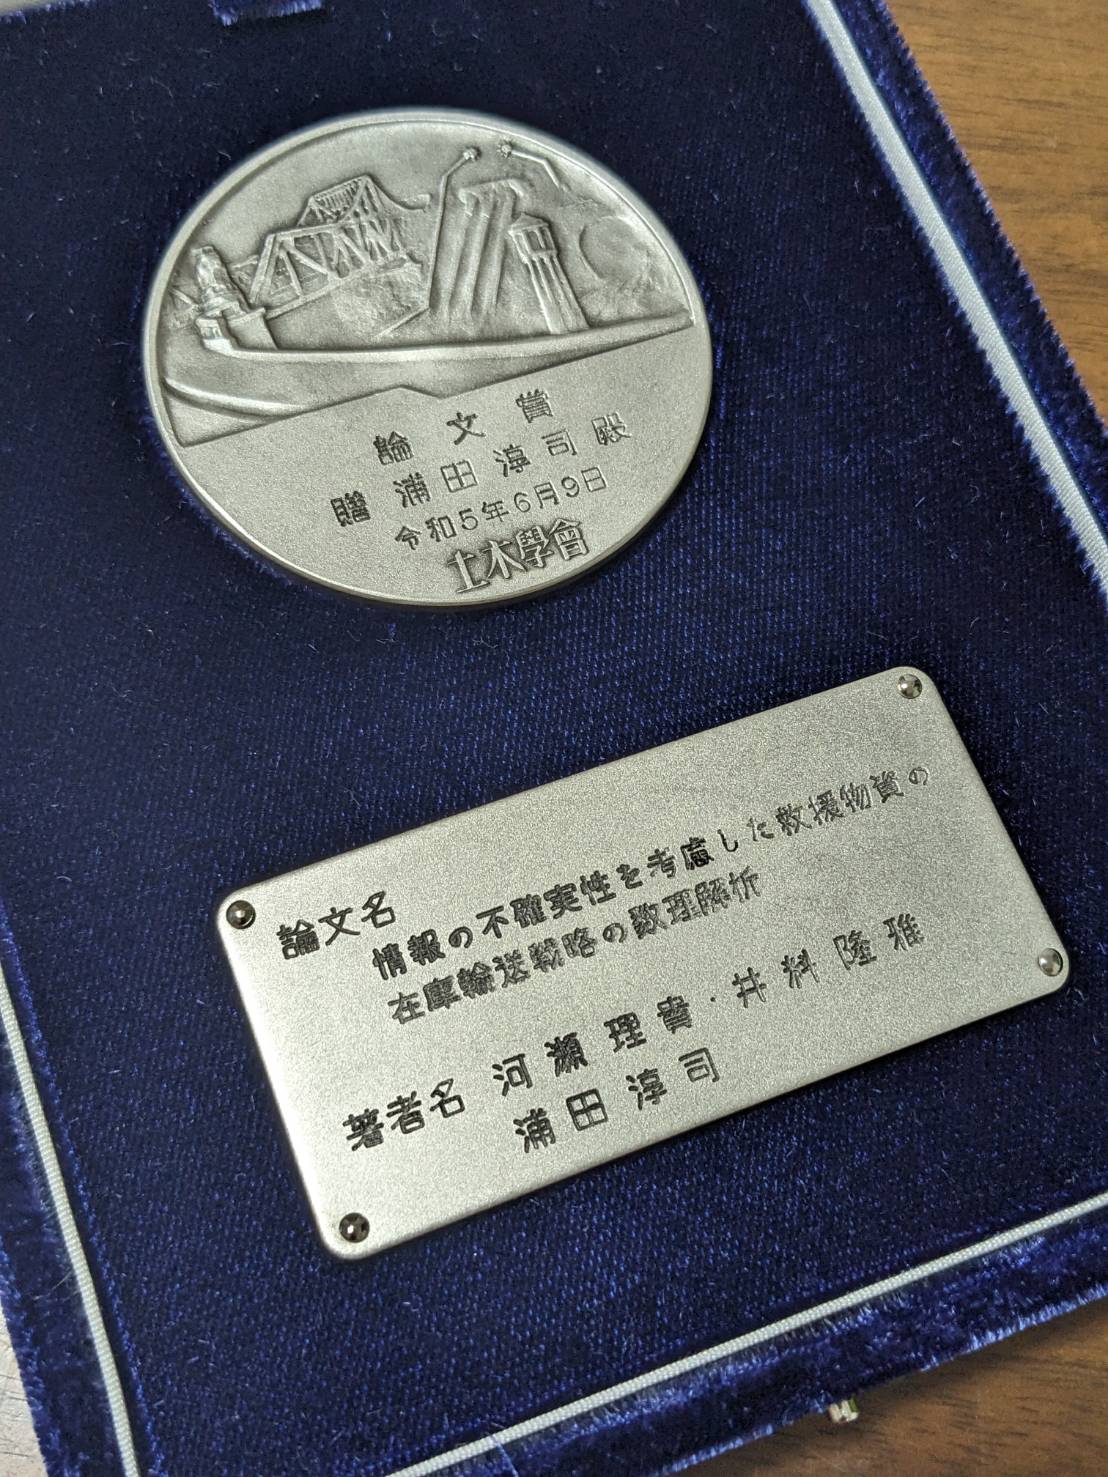 土木学会論文賞を受賞 Received Japan Society of Civil Engineers 